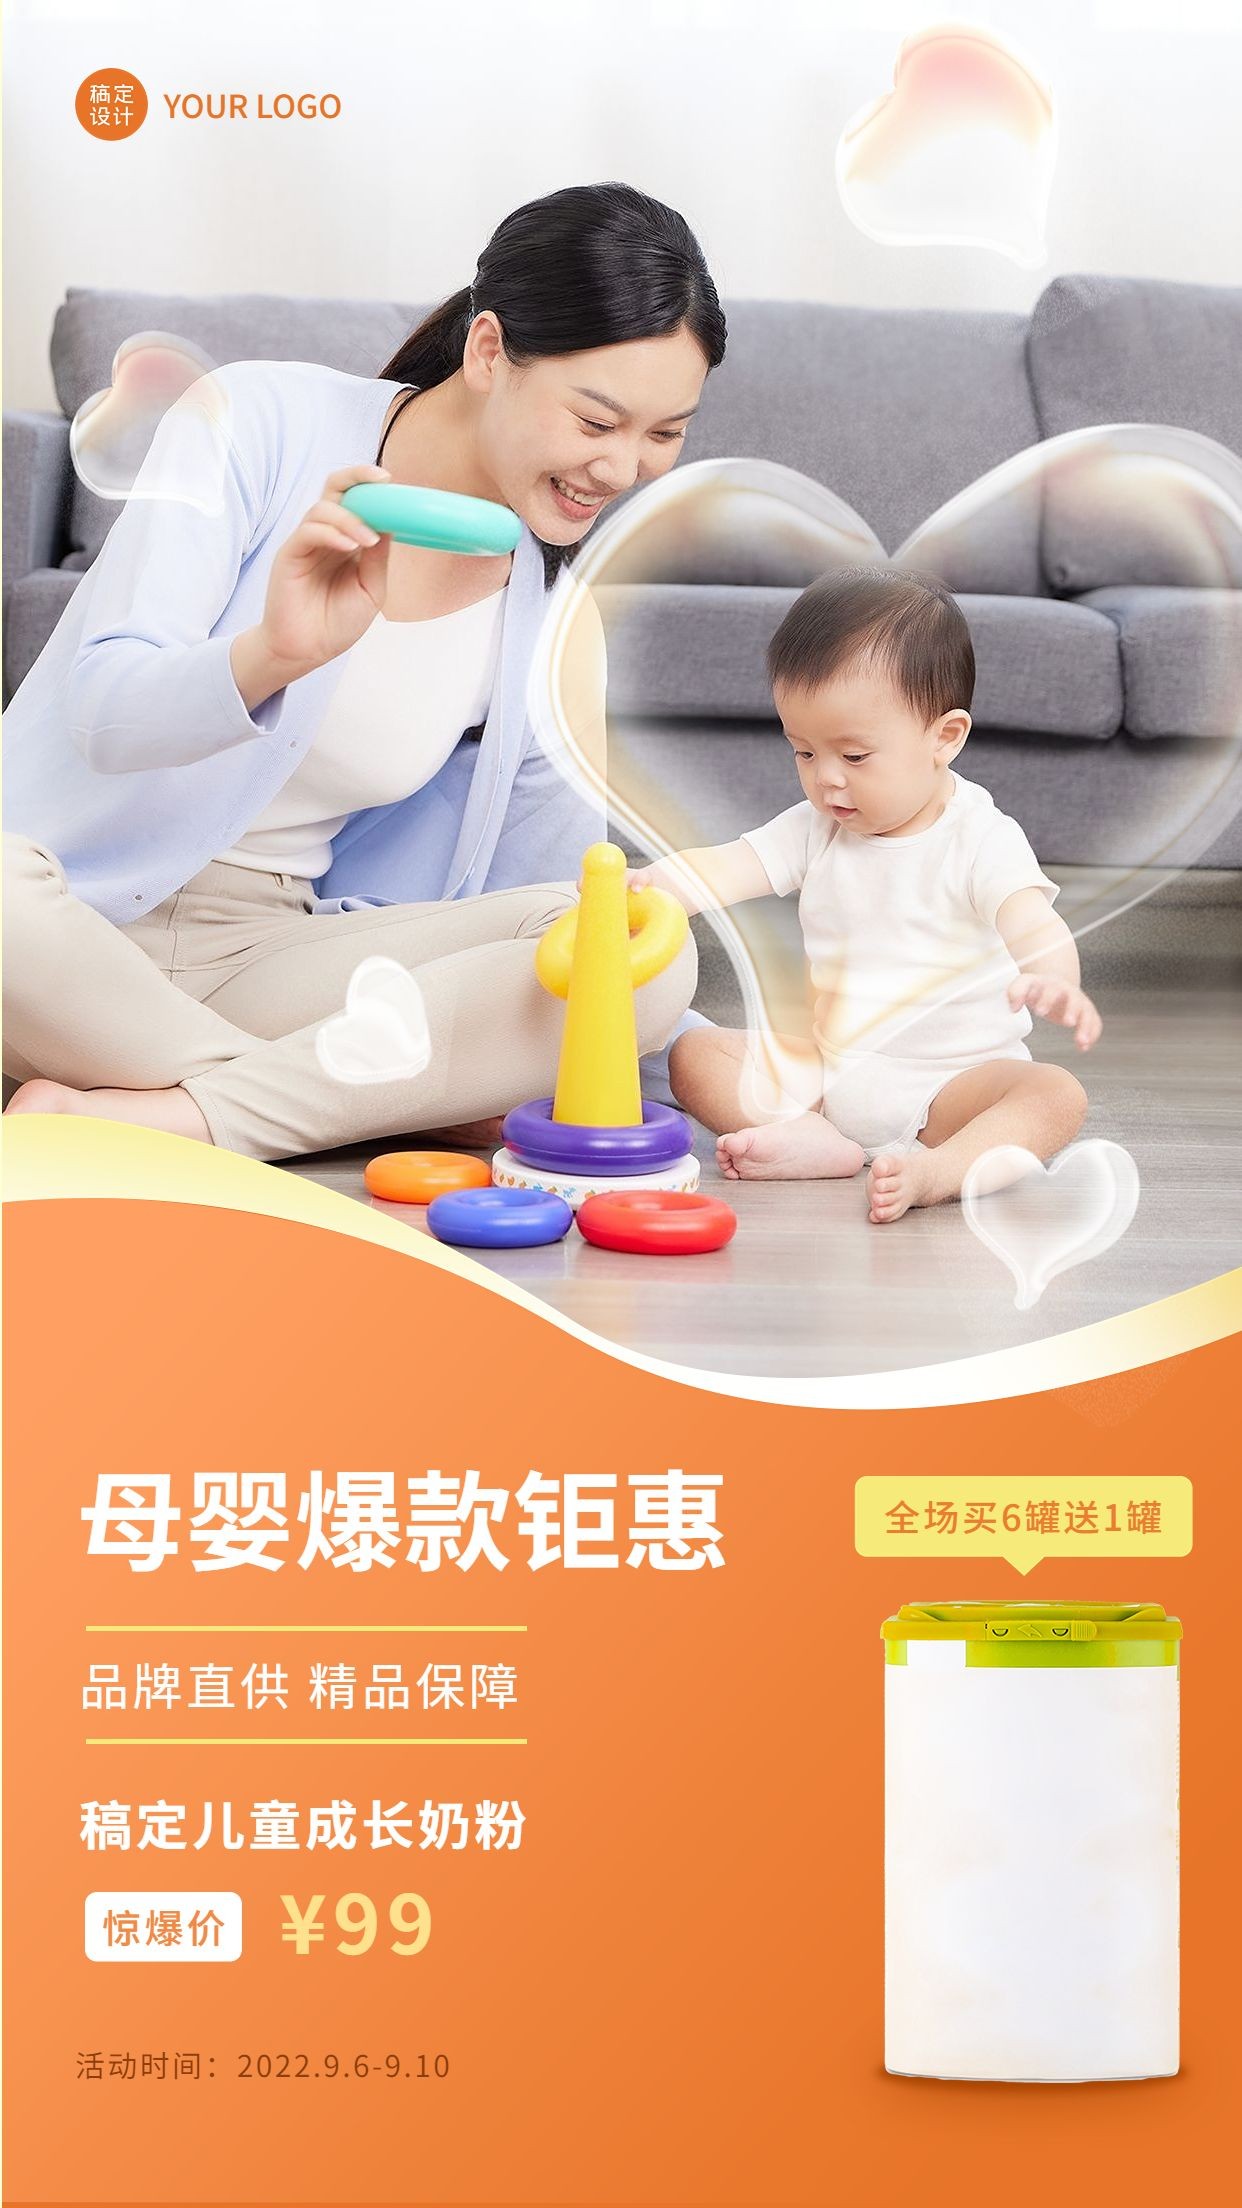 微商母婴亲子奶粉产品营销促销打折活动实景手机海报预览效果